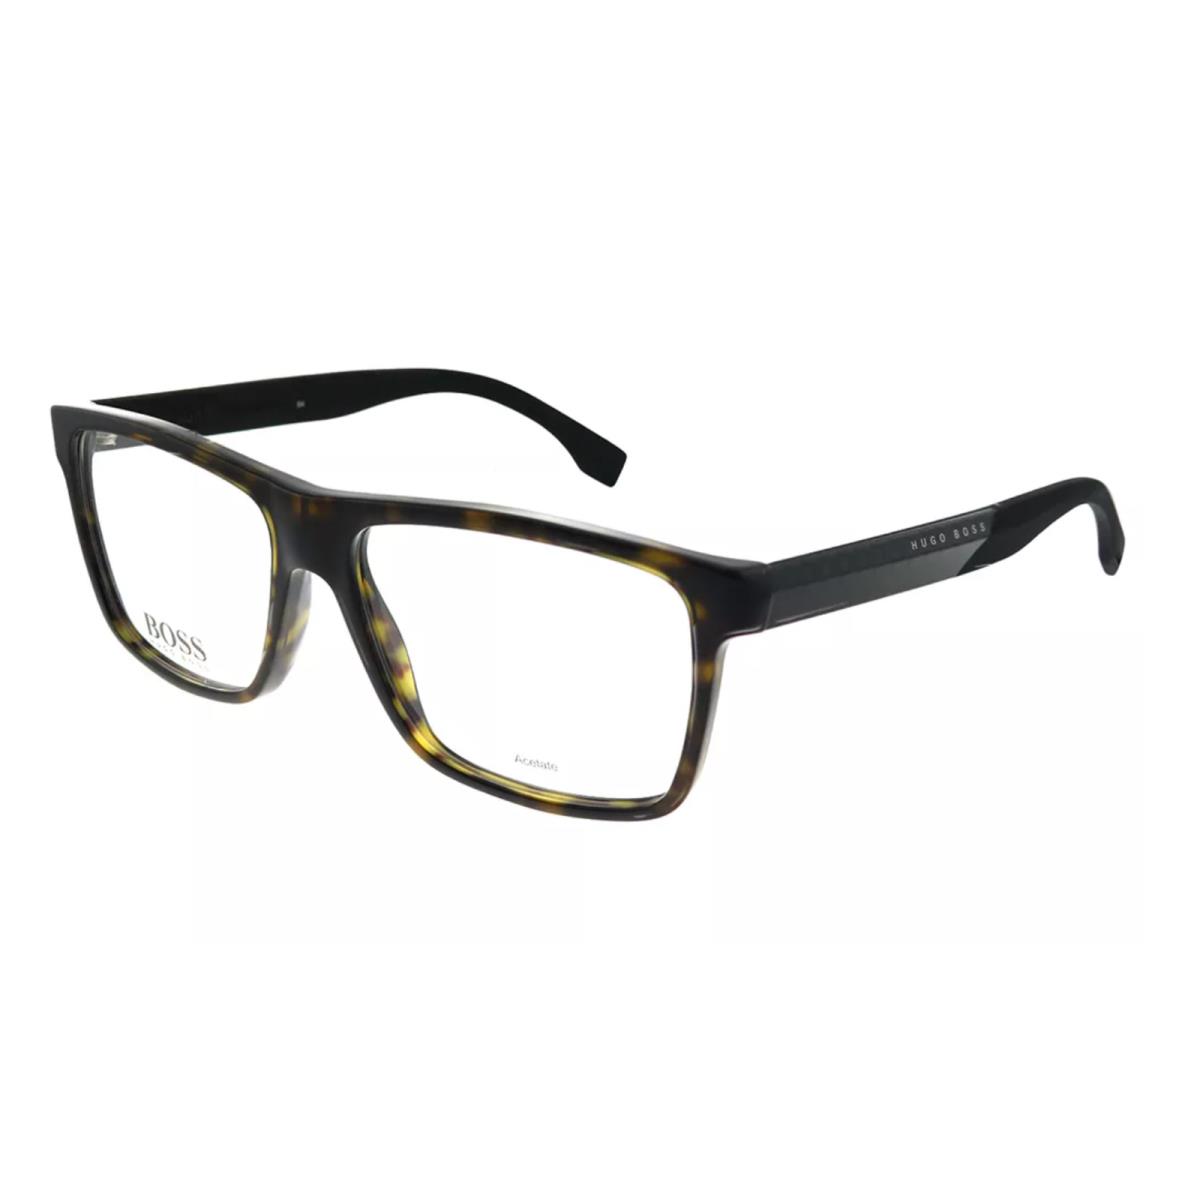 Hugo Boss Eyeglasses Boss 0880 Hxf 55-15 145 Tortoise Carbon Fiber Frames